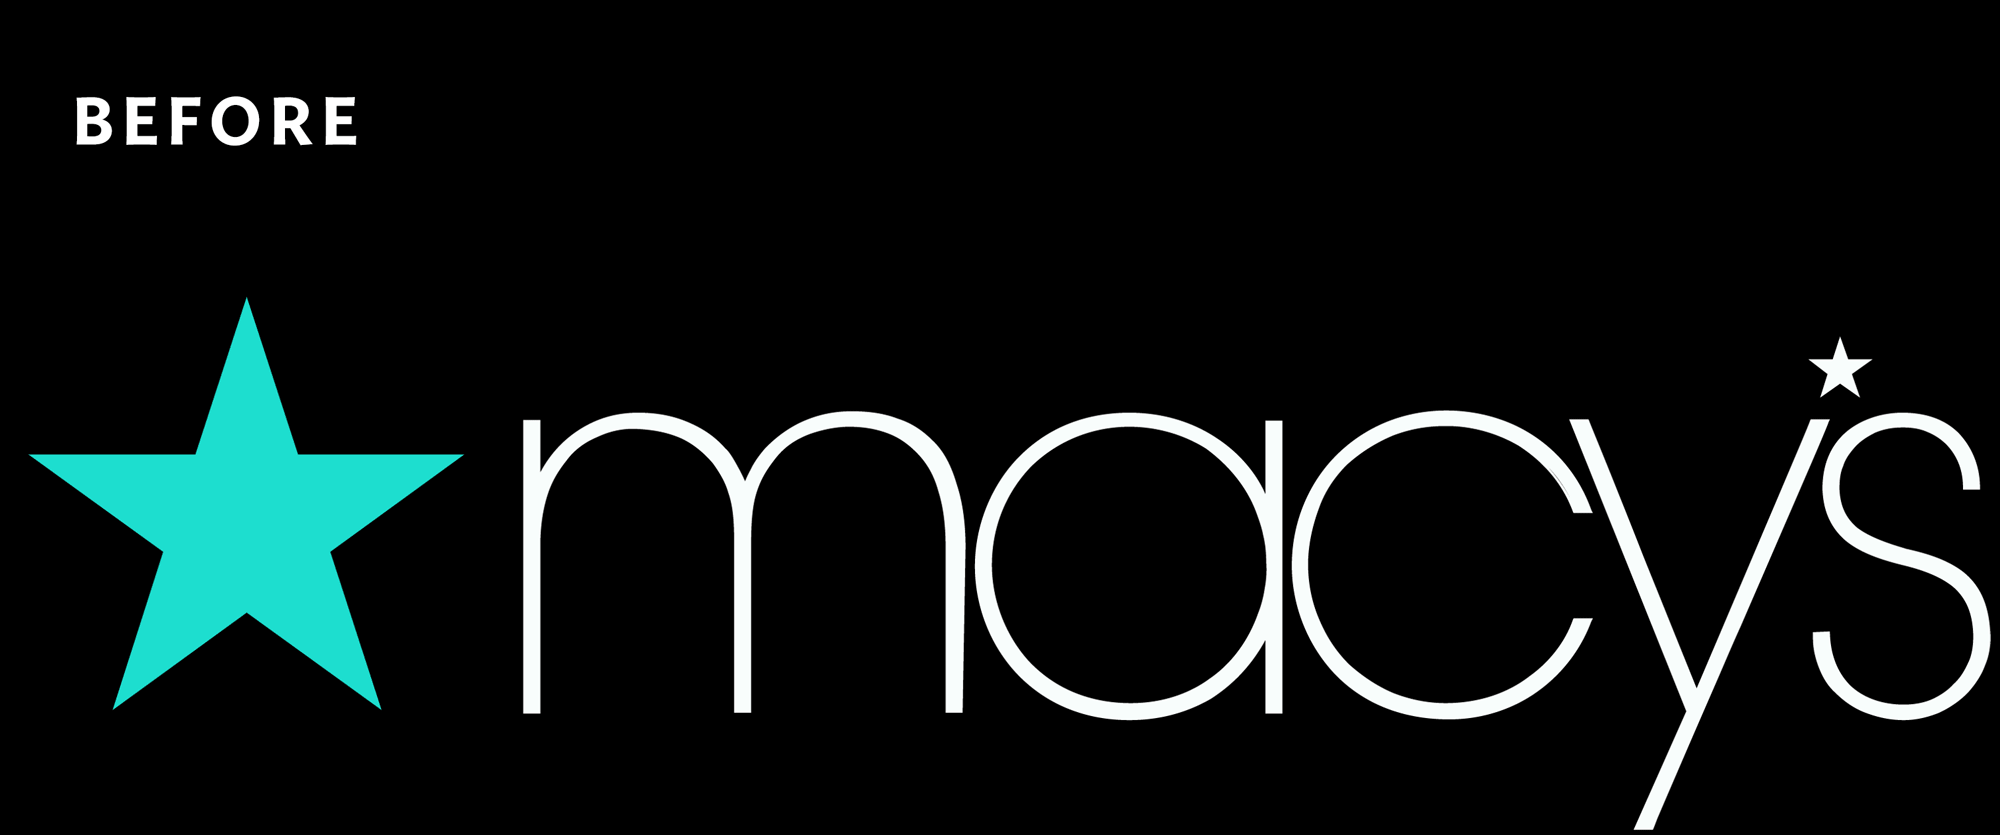 Brand New: New Logo for Macy's